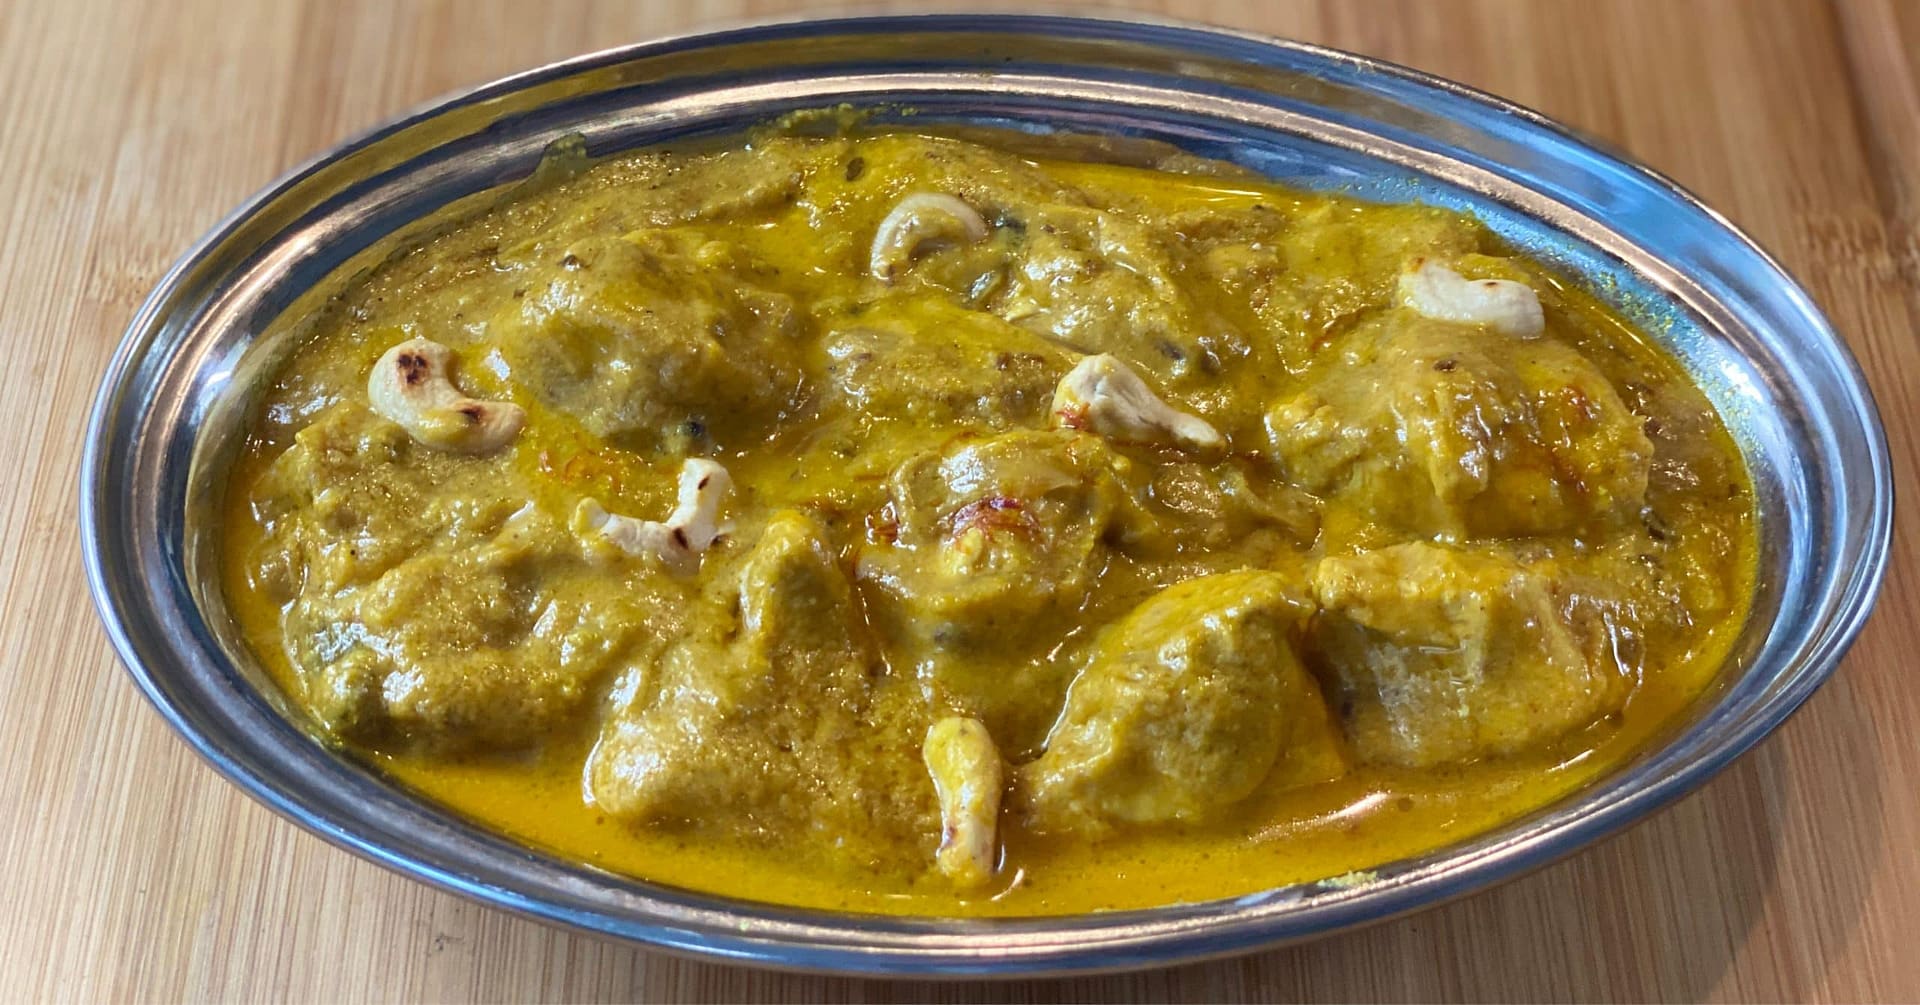 BIR Chicken Rezala Authentic Bengali Tweaks